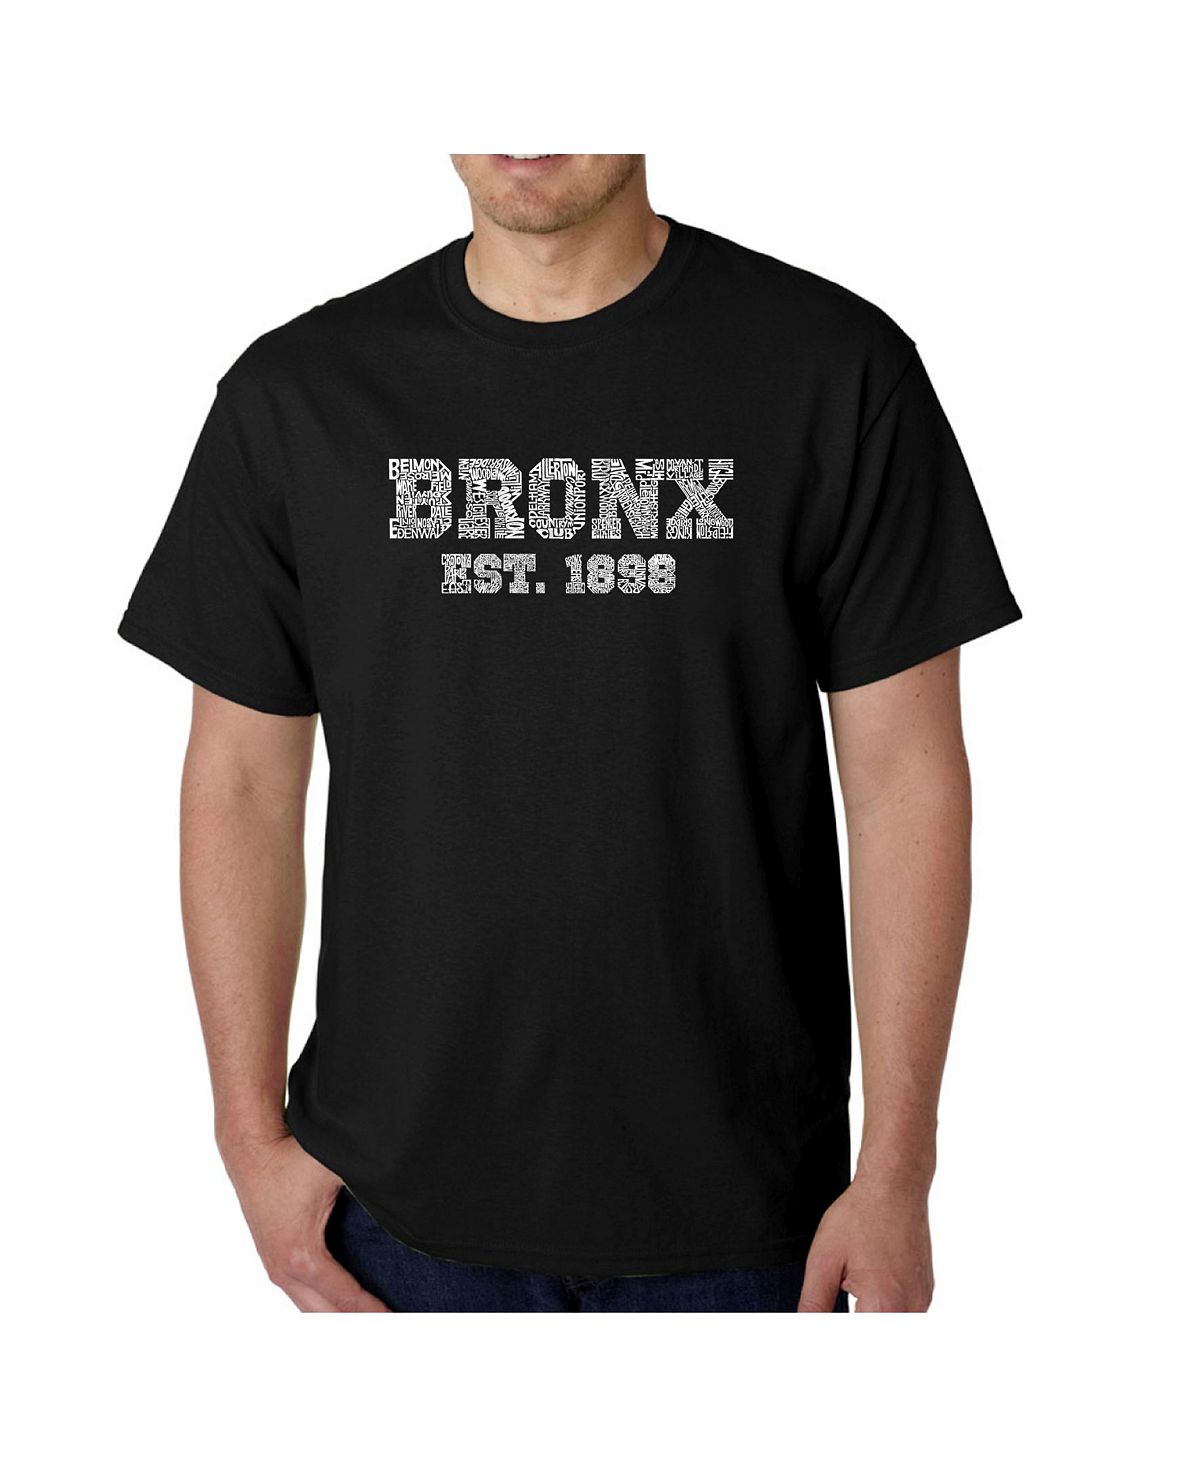 Мужская футболка word art - популярный бронкс, районы нью-йорка LA Pop Art, черный цена и фото